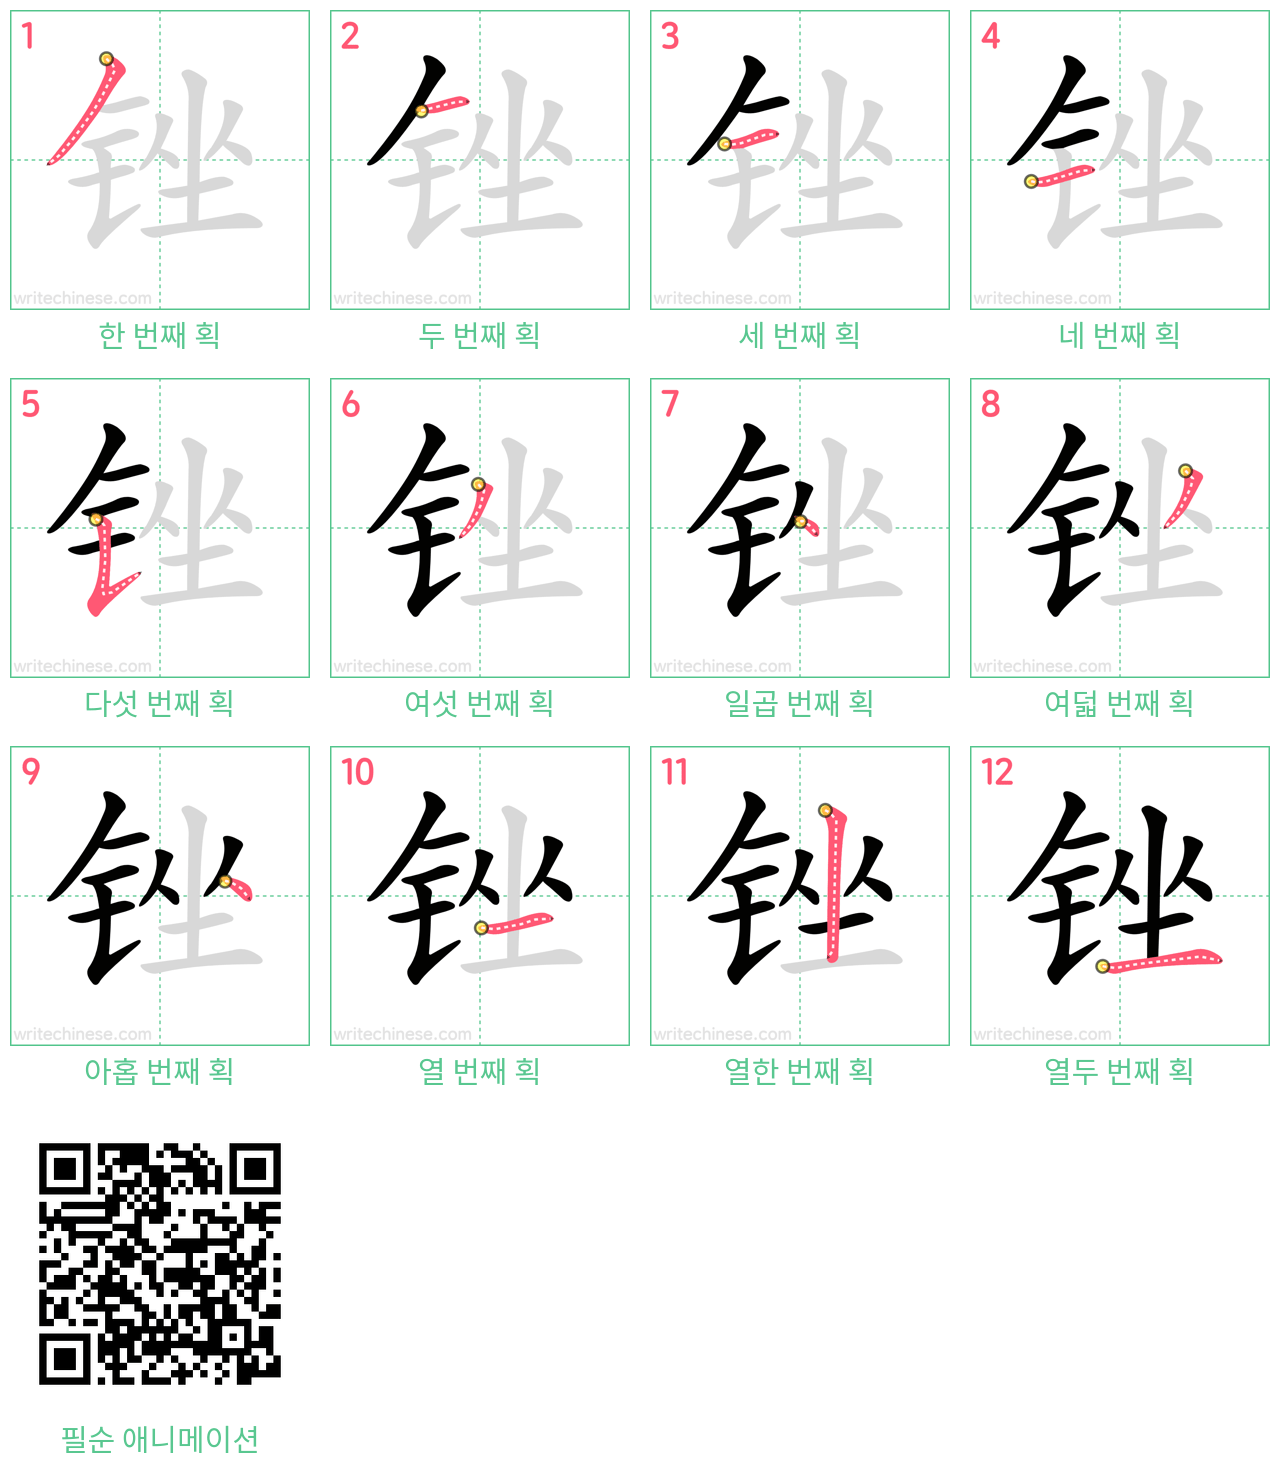 锉 step-by-step stroke order diagrams